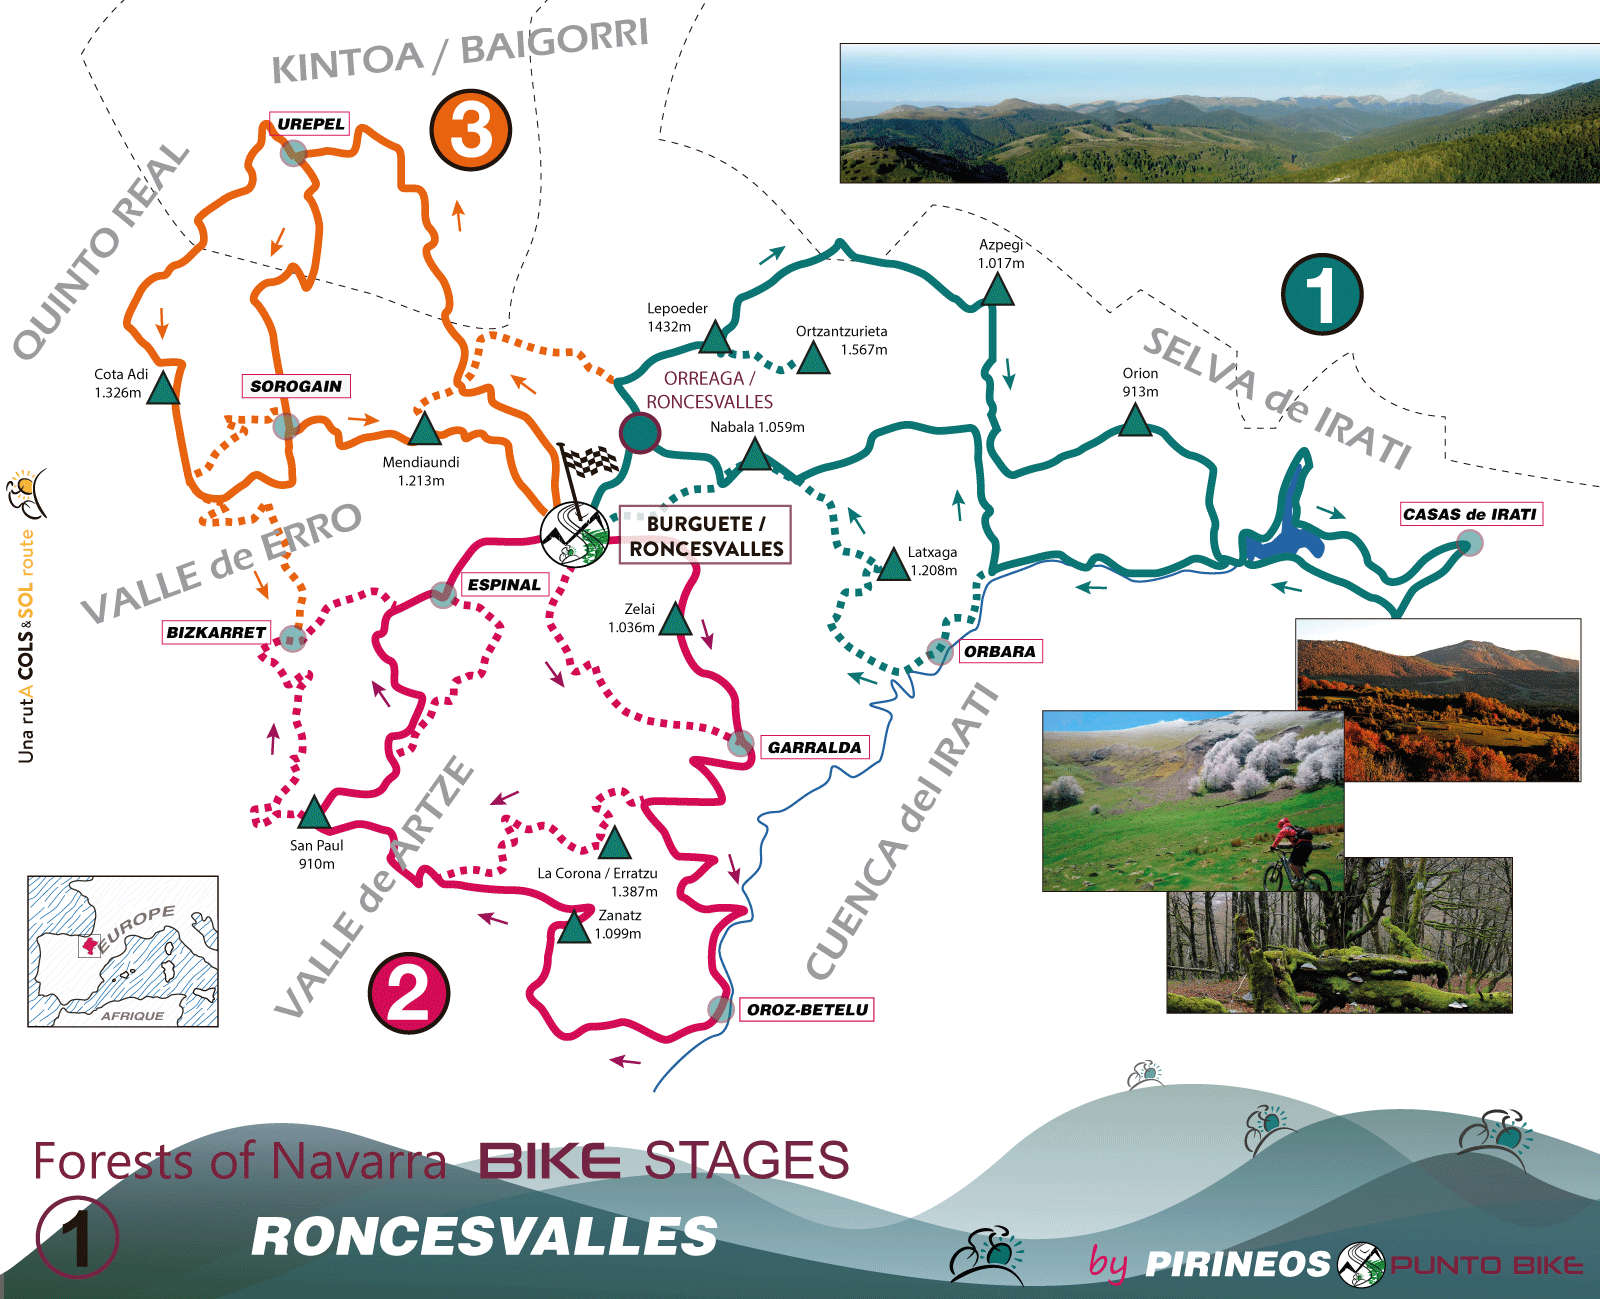 Bosques-de-Navarra-1-Roncesvalles-Carte